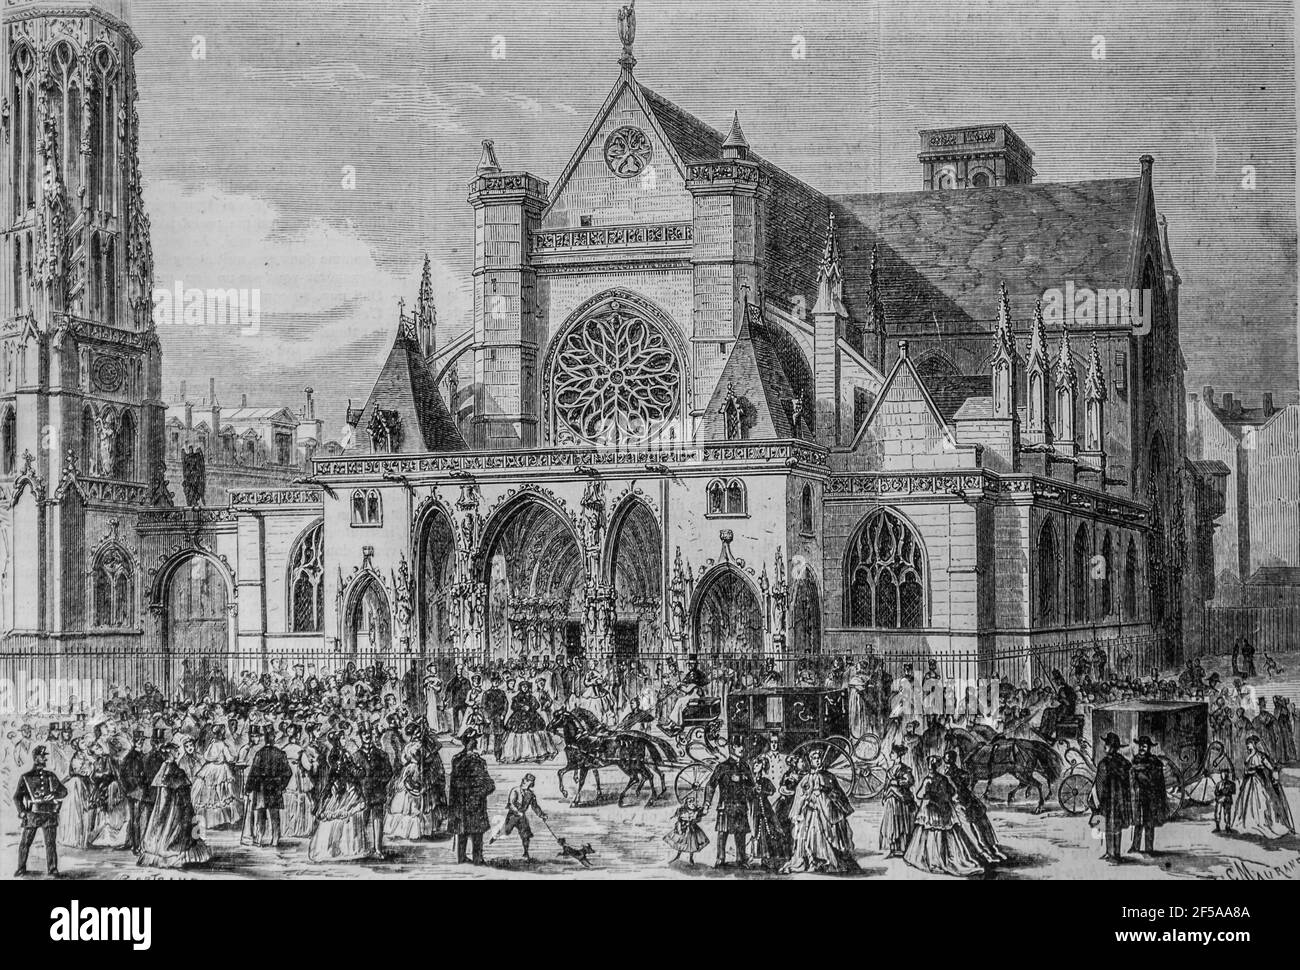 la reine isabelle sortant de la messe a saint germain l'auxerrois ,l'univers illustre,editeur michel levy 1868 Stock Photo